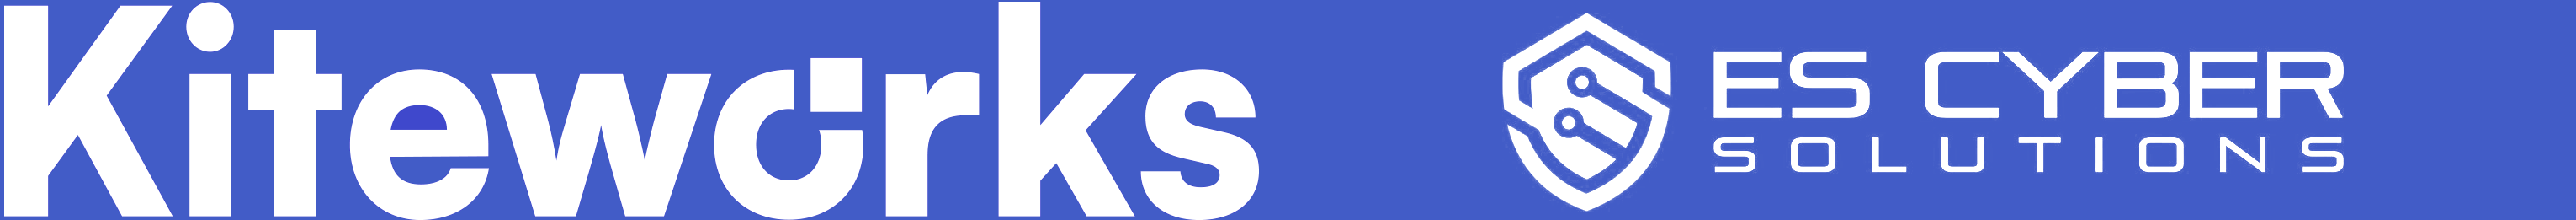 ES Cyber Logo-2